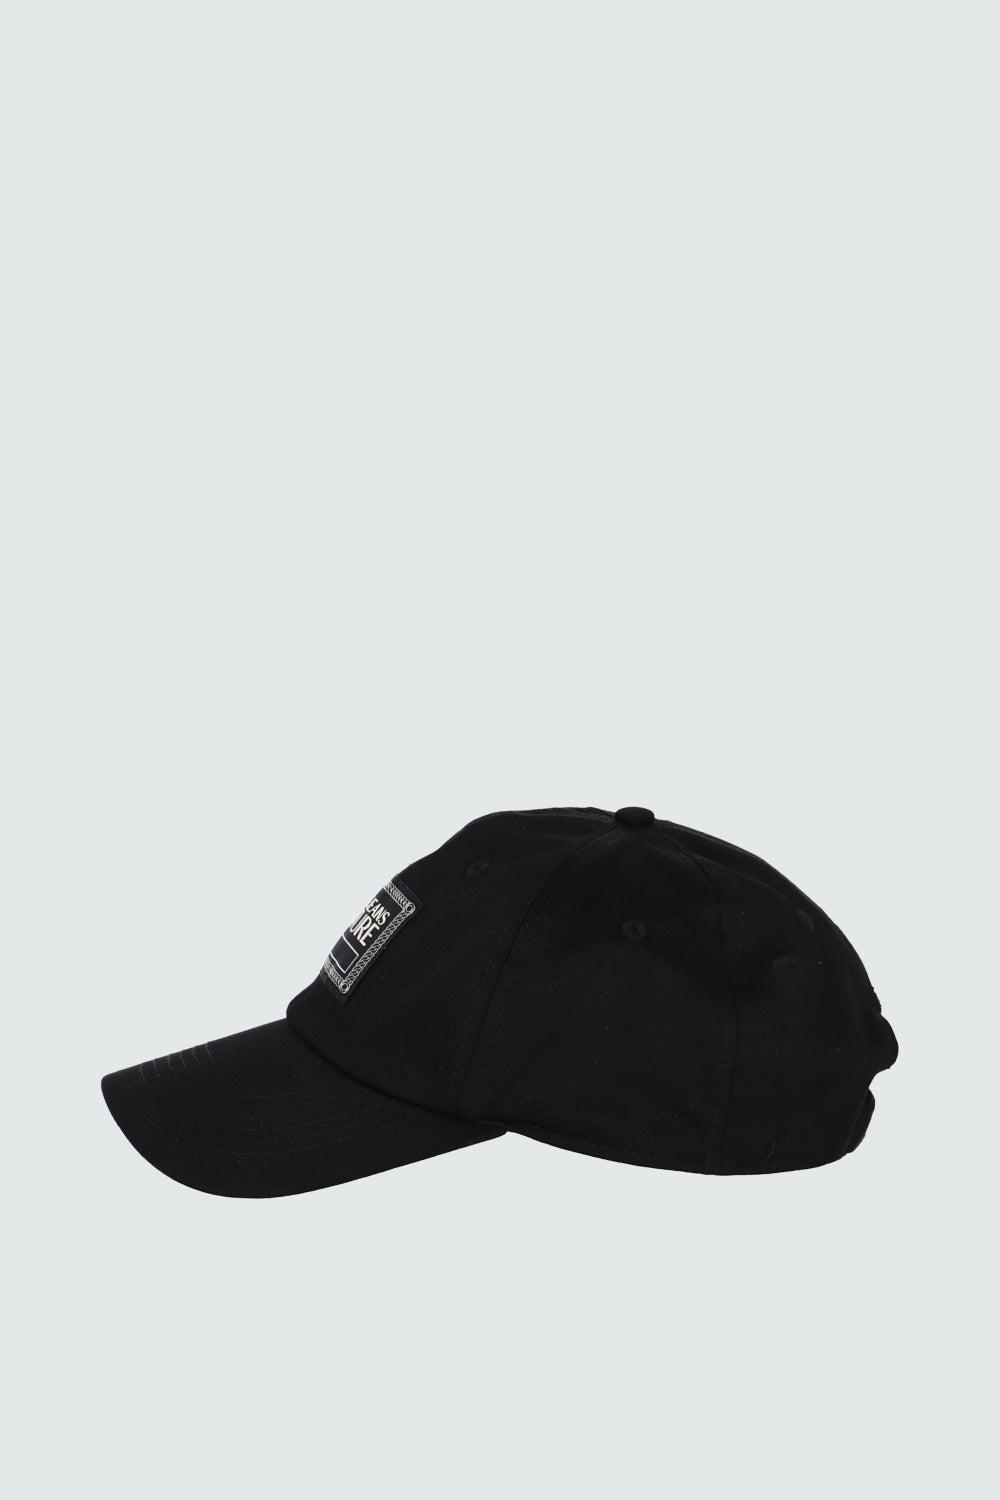 כובע מצחייה לנשים לוגו VERSACE Vendome online | ונדום .